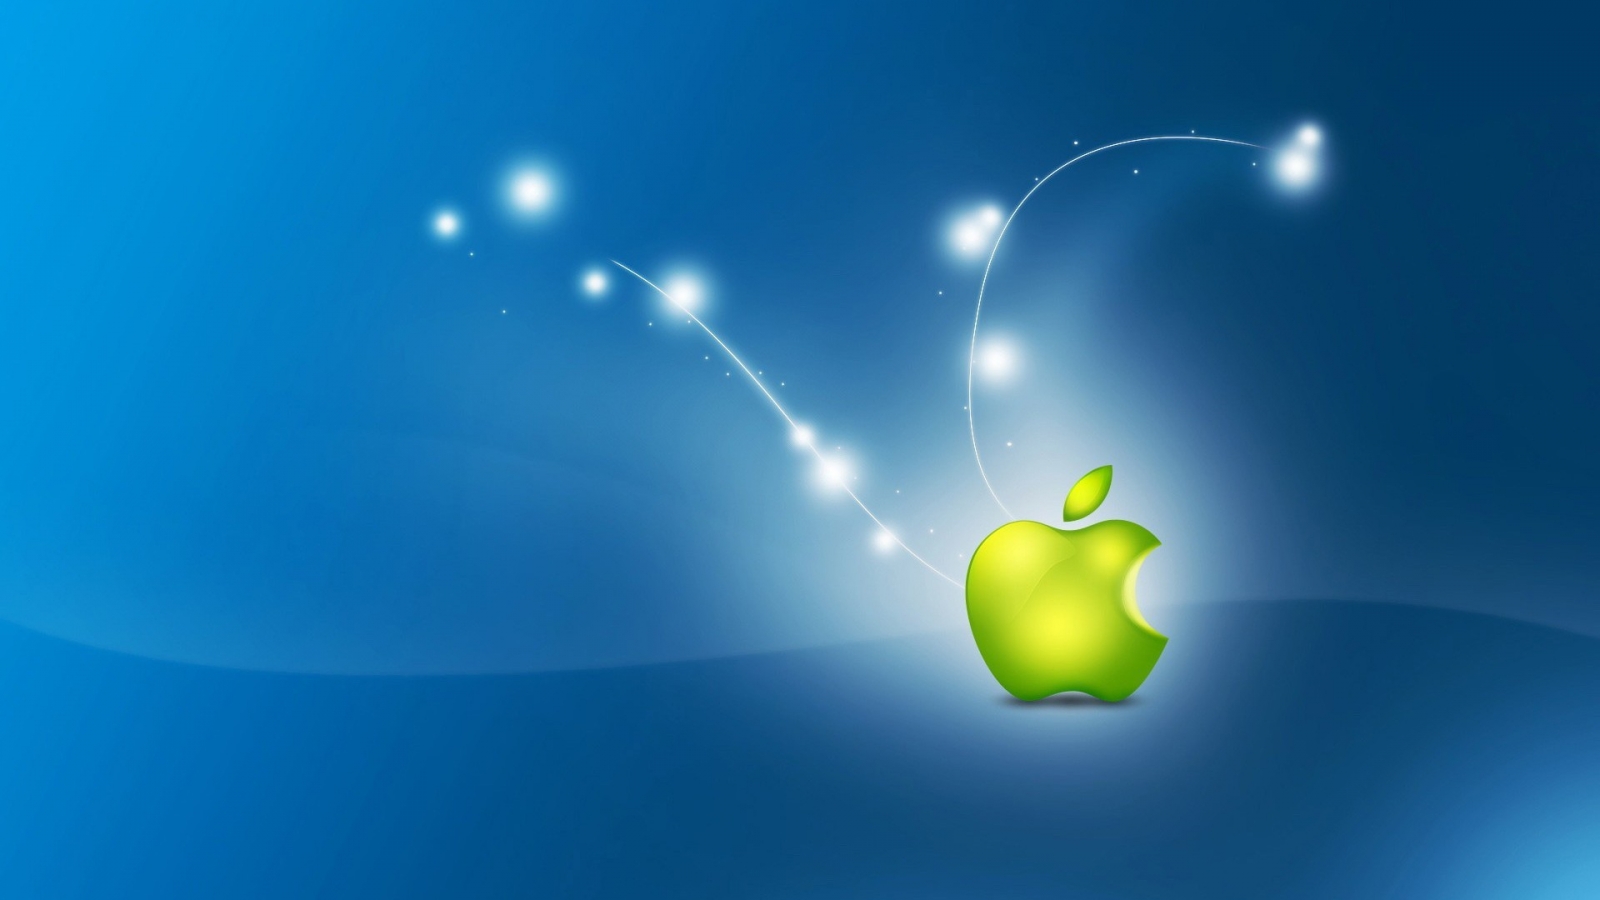 Artistic Apple Logo for 1600 x 900 HDTV resolution